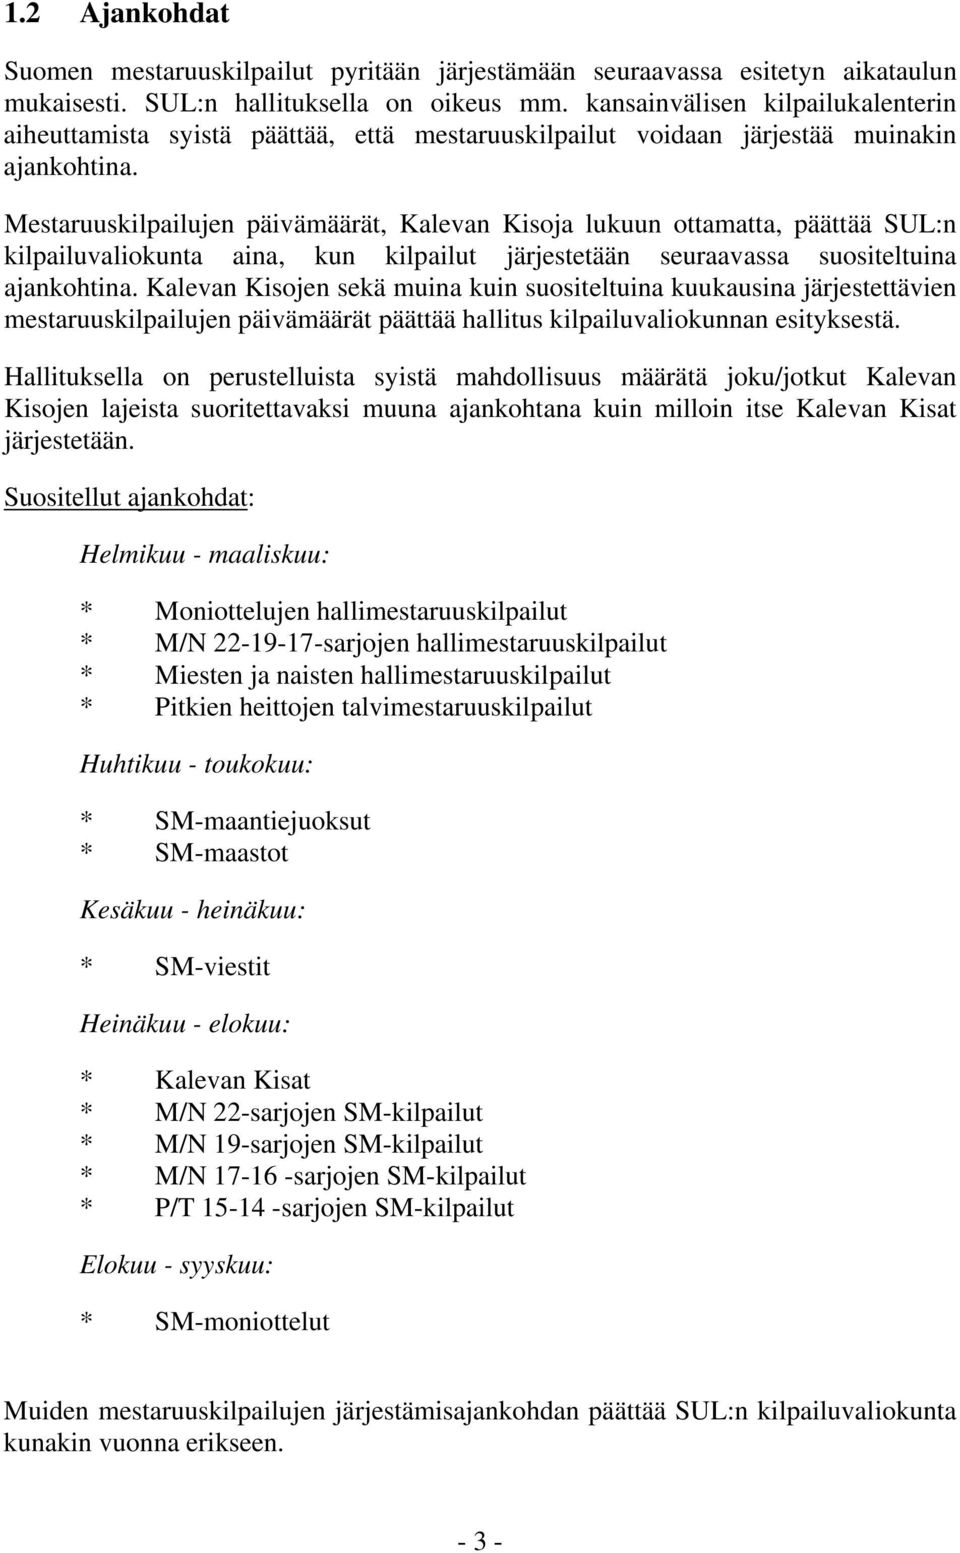 Mestaruuskilpailujen päivämäärät, Kalevan Kisoja lukuun ottamatta, päättää SUL:n kilpailuvaliokunta aina, kun kilpailut järjestetään seuraavassa suositeltuina ajankohtina.